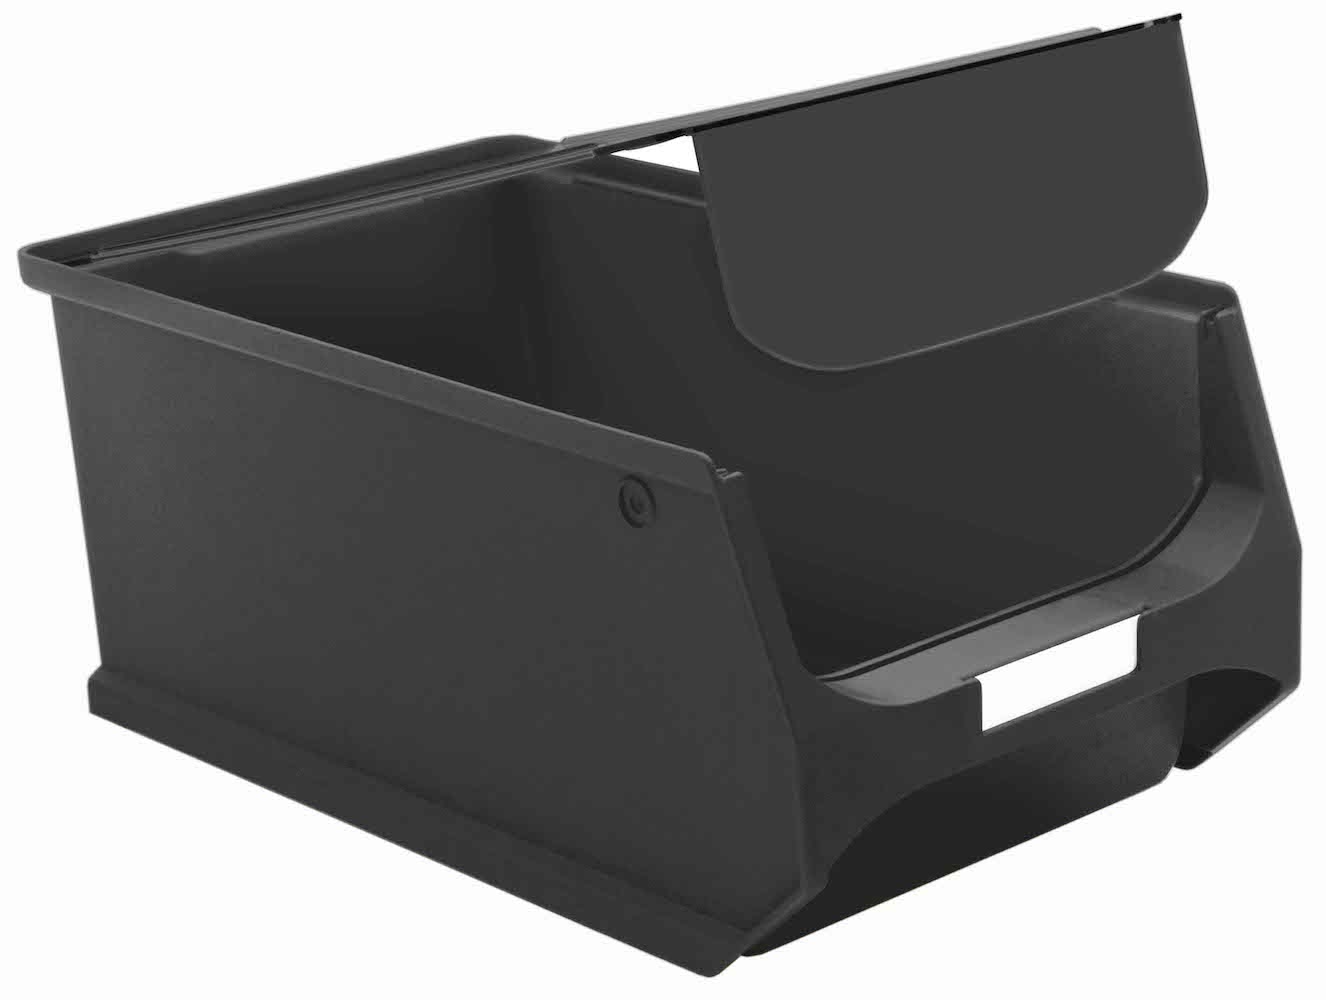 Staubdeckel 10x leitfähige Abdeckung für Sichtlagerbox 4.0 & 4.1 | HxBxT 0,3x19,2x31,5cm | ESD, Schmutzdeckel, Schutzdeckel, Sichtlagerbehälter, Sitchlagerkasten